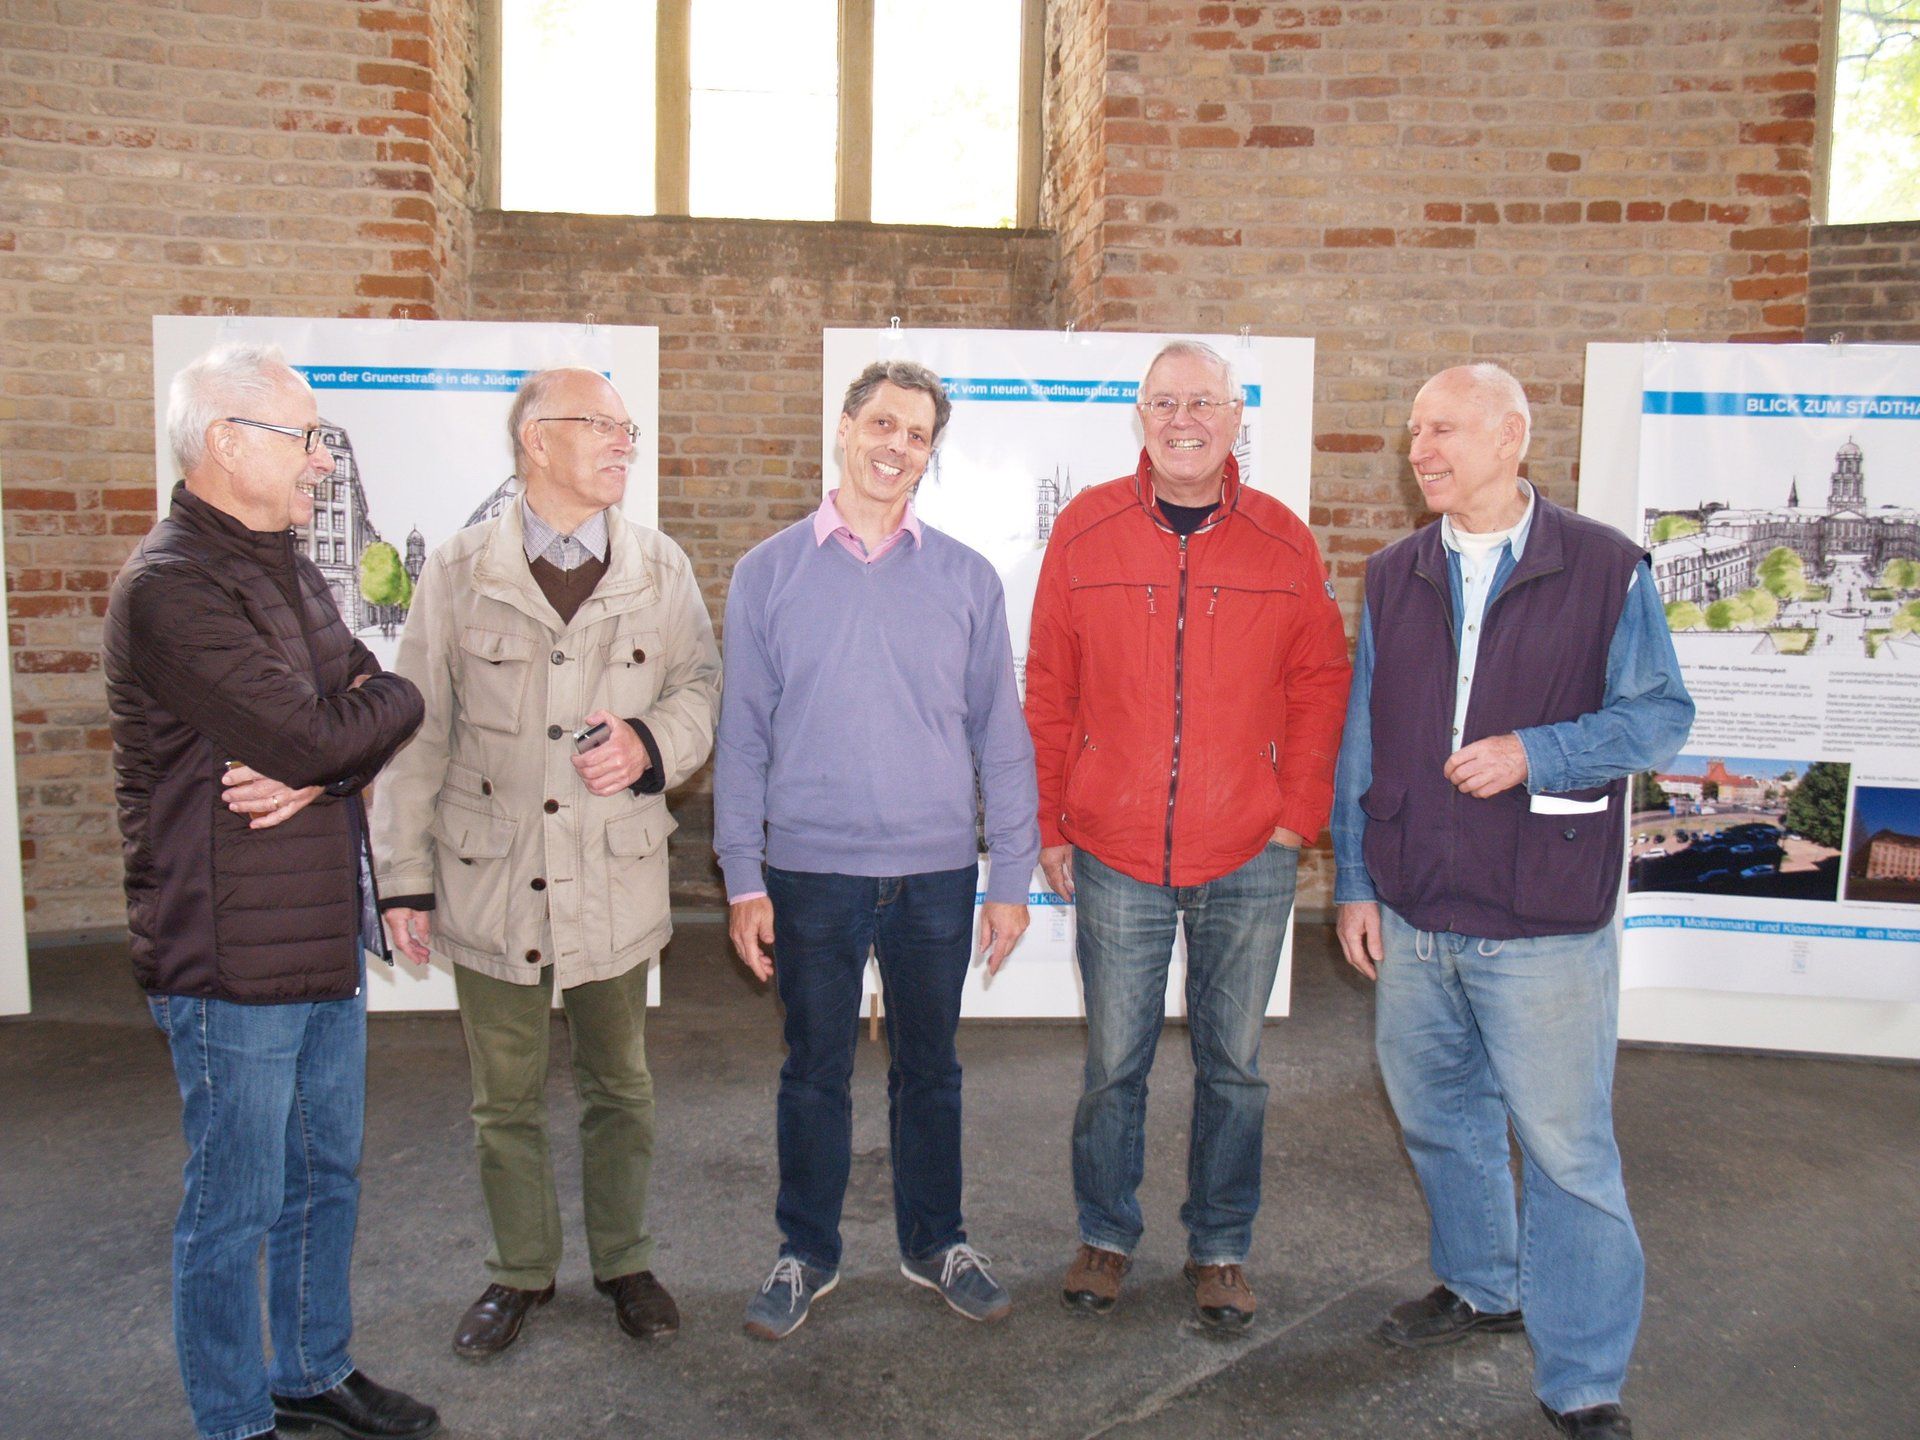 Herr Koch, Herrr Krüger, Herr Dr. Malliaris, Herr Laternser, Herr Raab beim Ausstellungsaufbau in der Parochialkirche